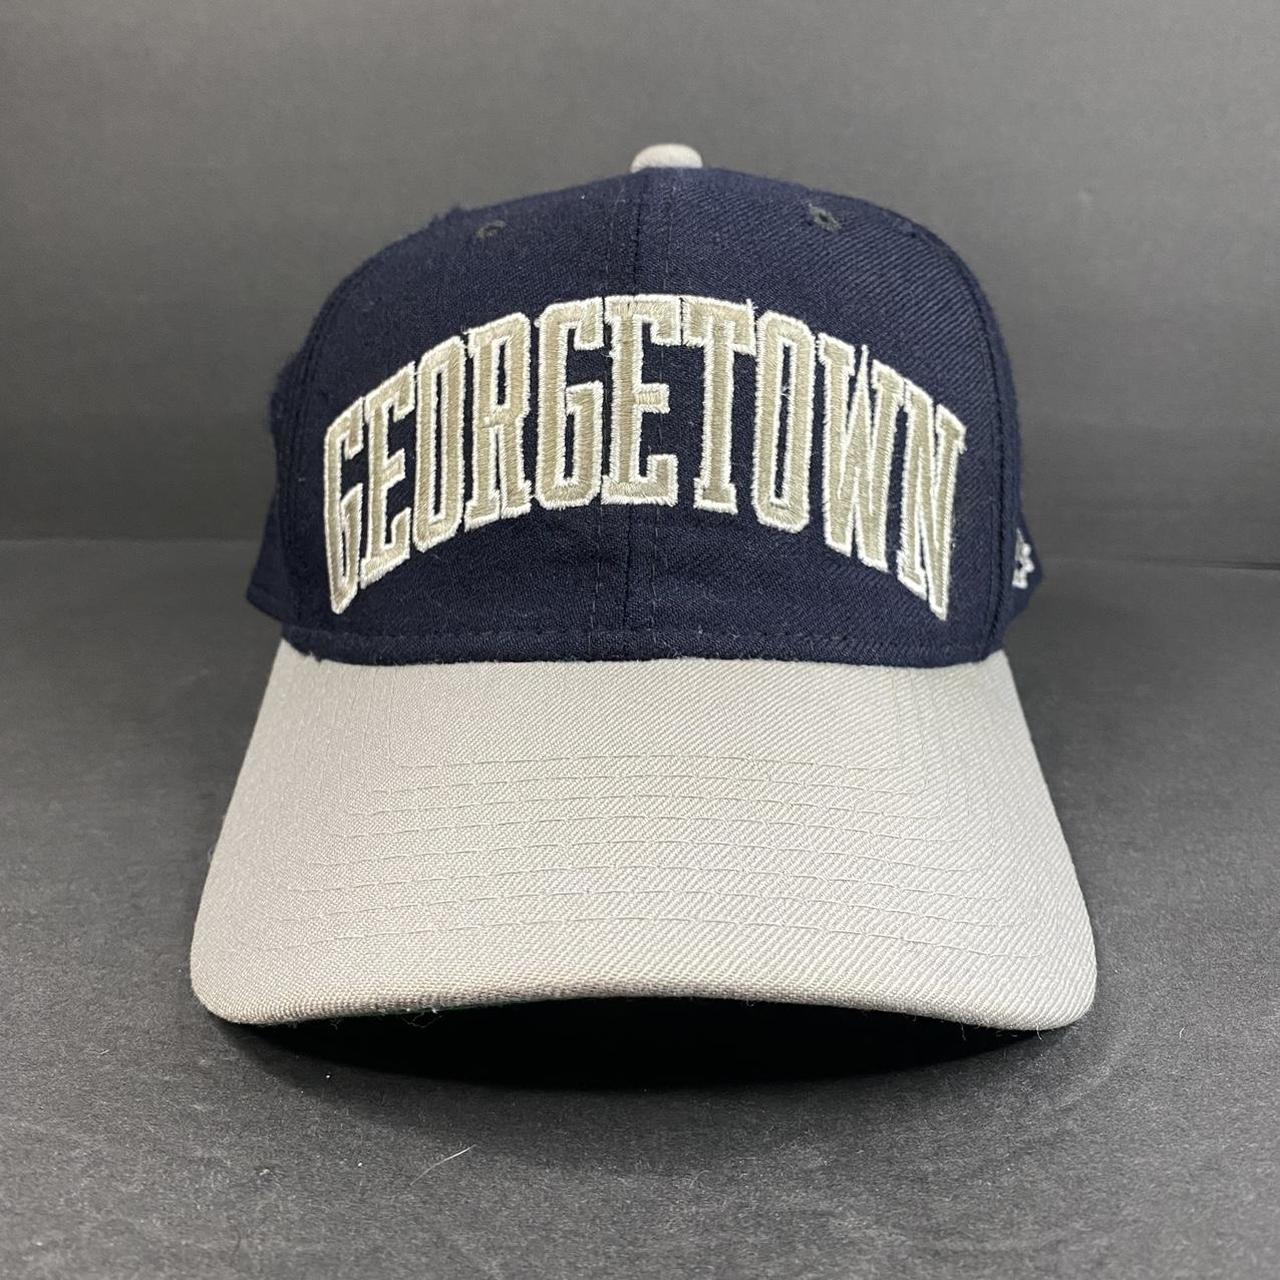 Vintage Georgetown Hoyas Starter Fitted Hat Size 7   Depop